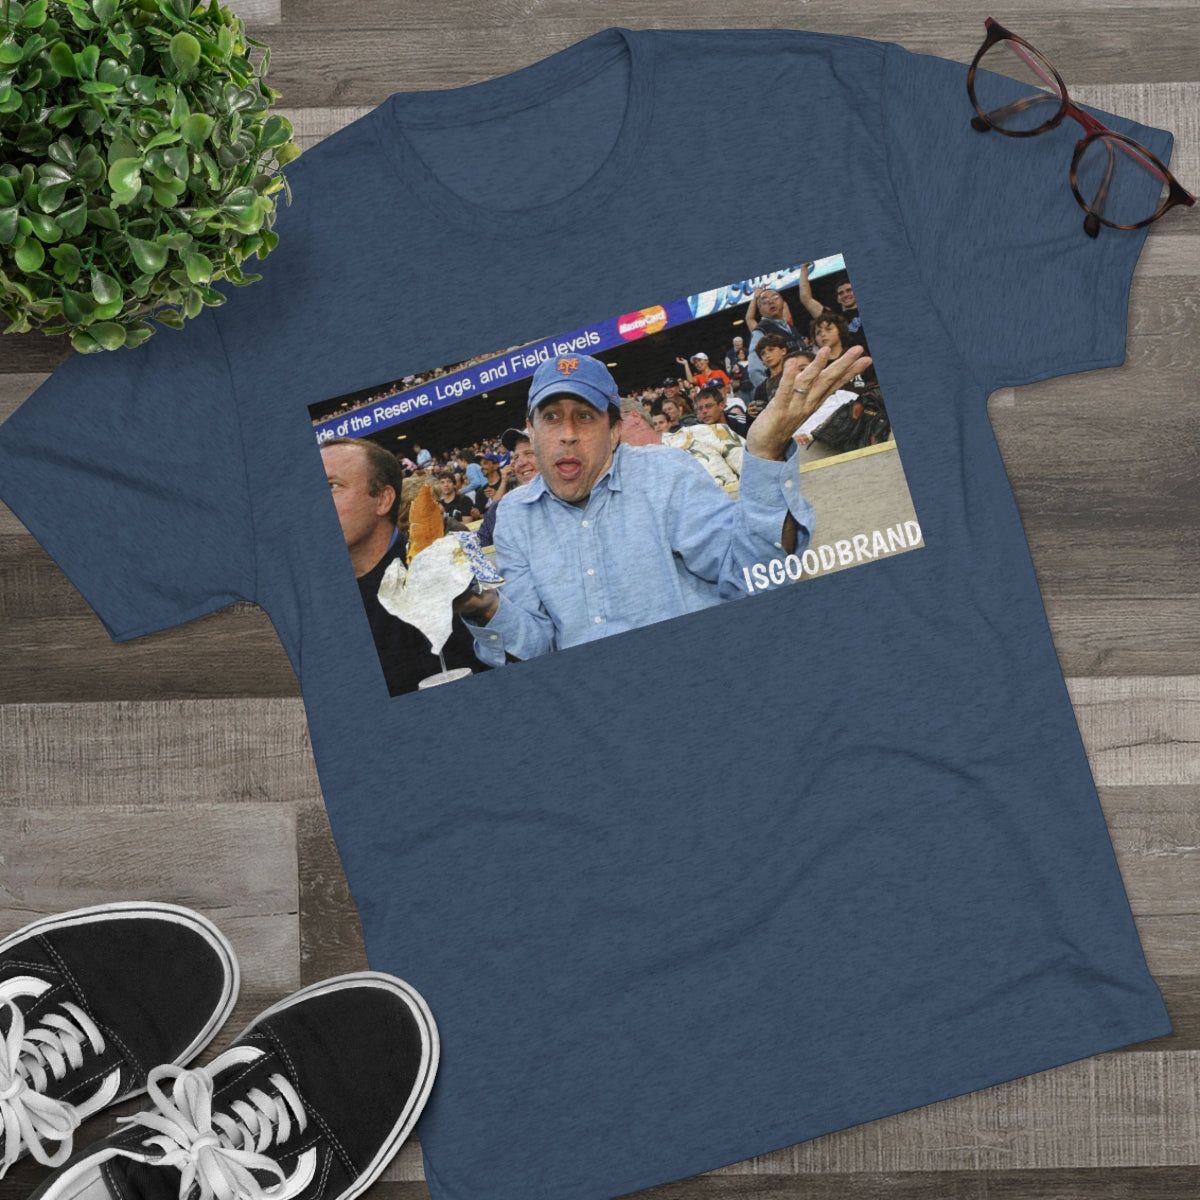 Jerry Seinfeld Mets Shirt - IsGoodBrand